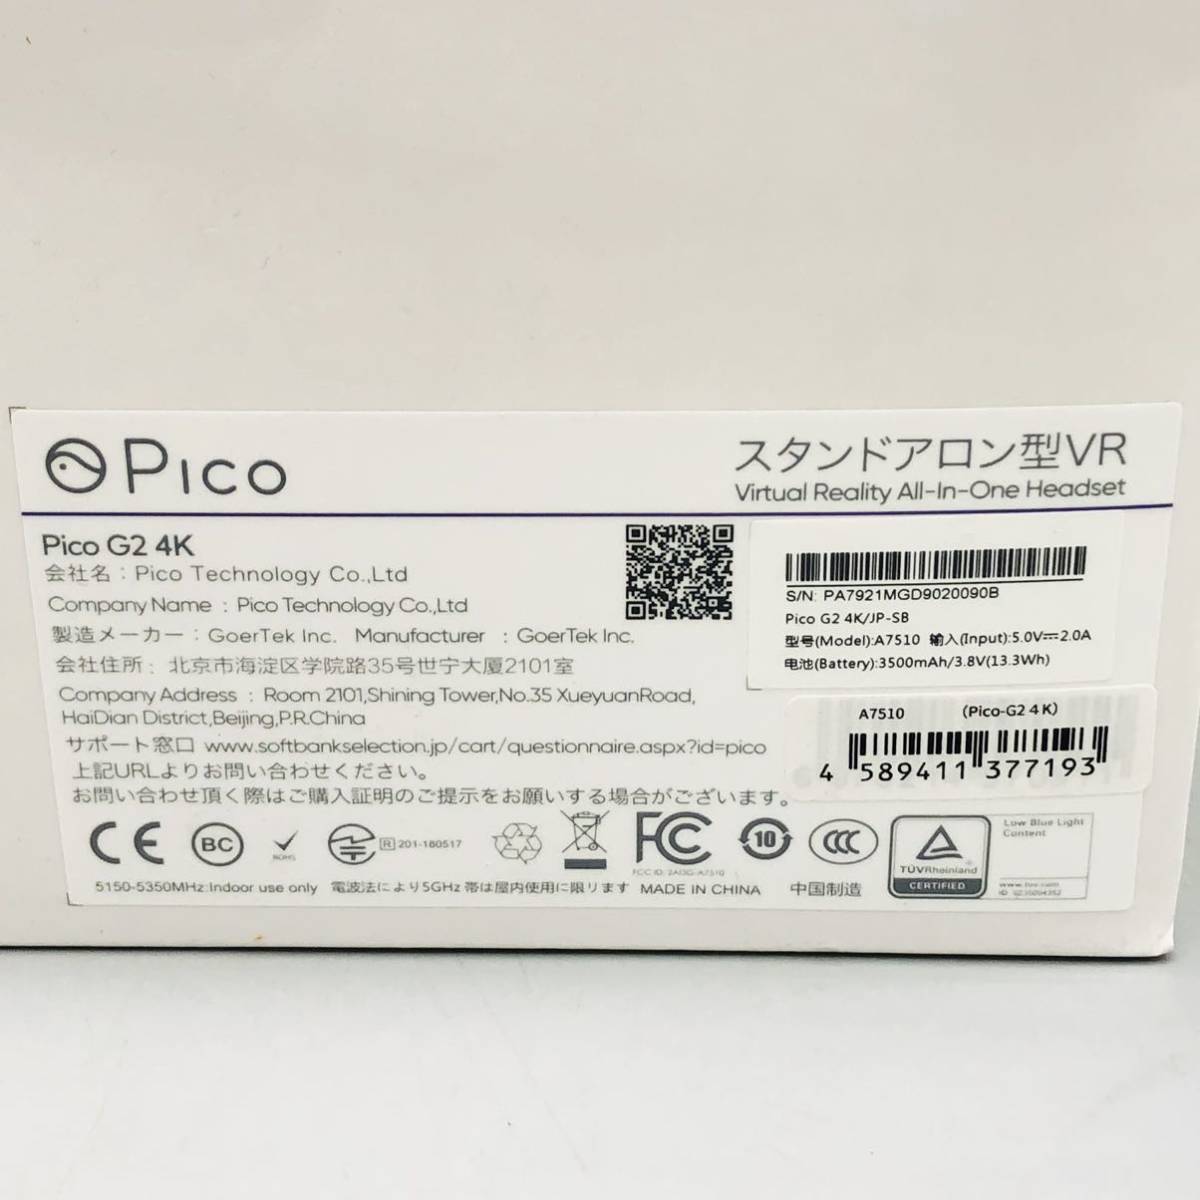 【新品 未使用 未開封】 Pico G2 4K A7510 スタンドアロン型 VR ゴーグル 3D オールインワン ヘッドセット JP-SB Amazon Prime Video対応_画像5